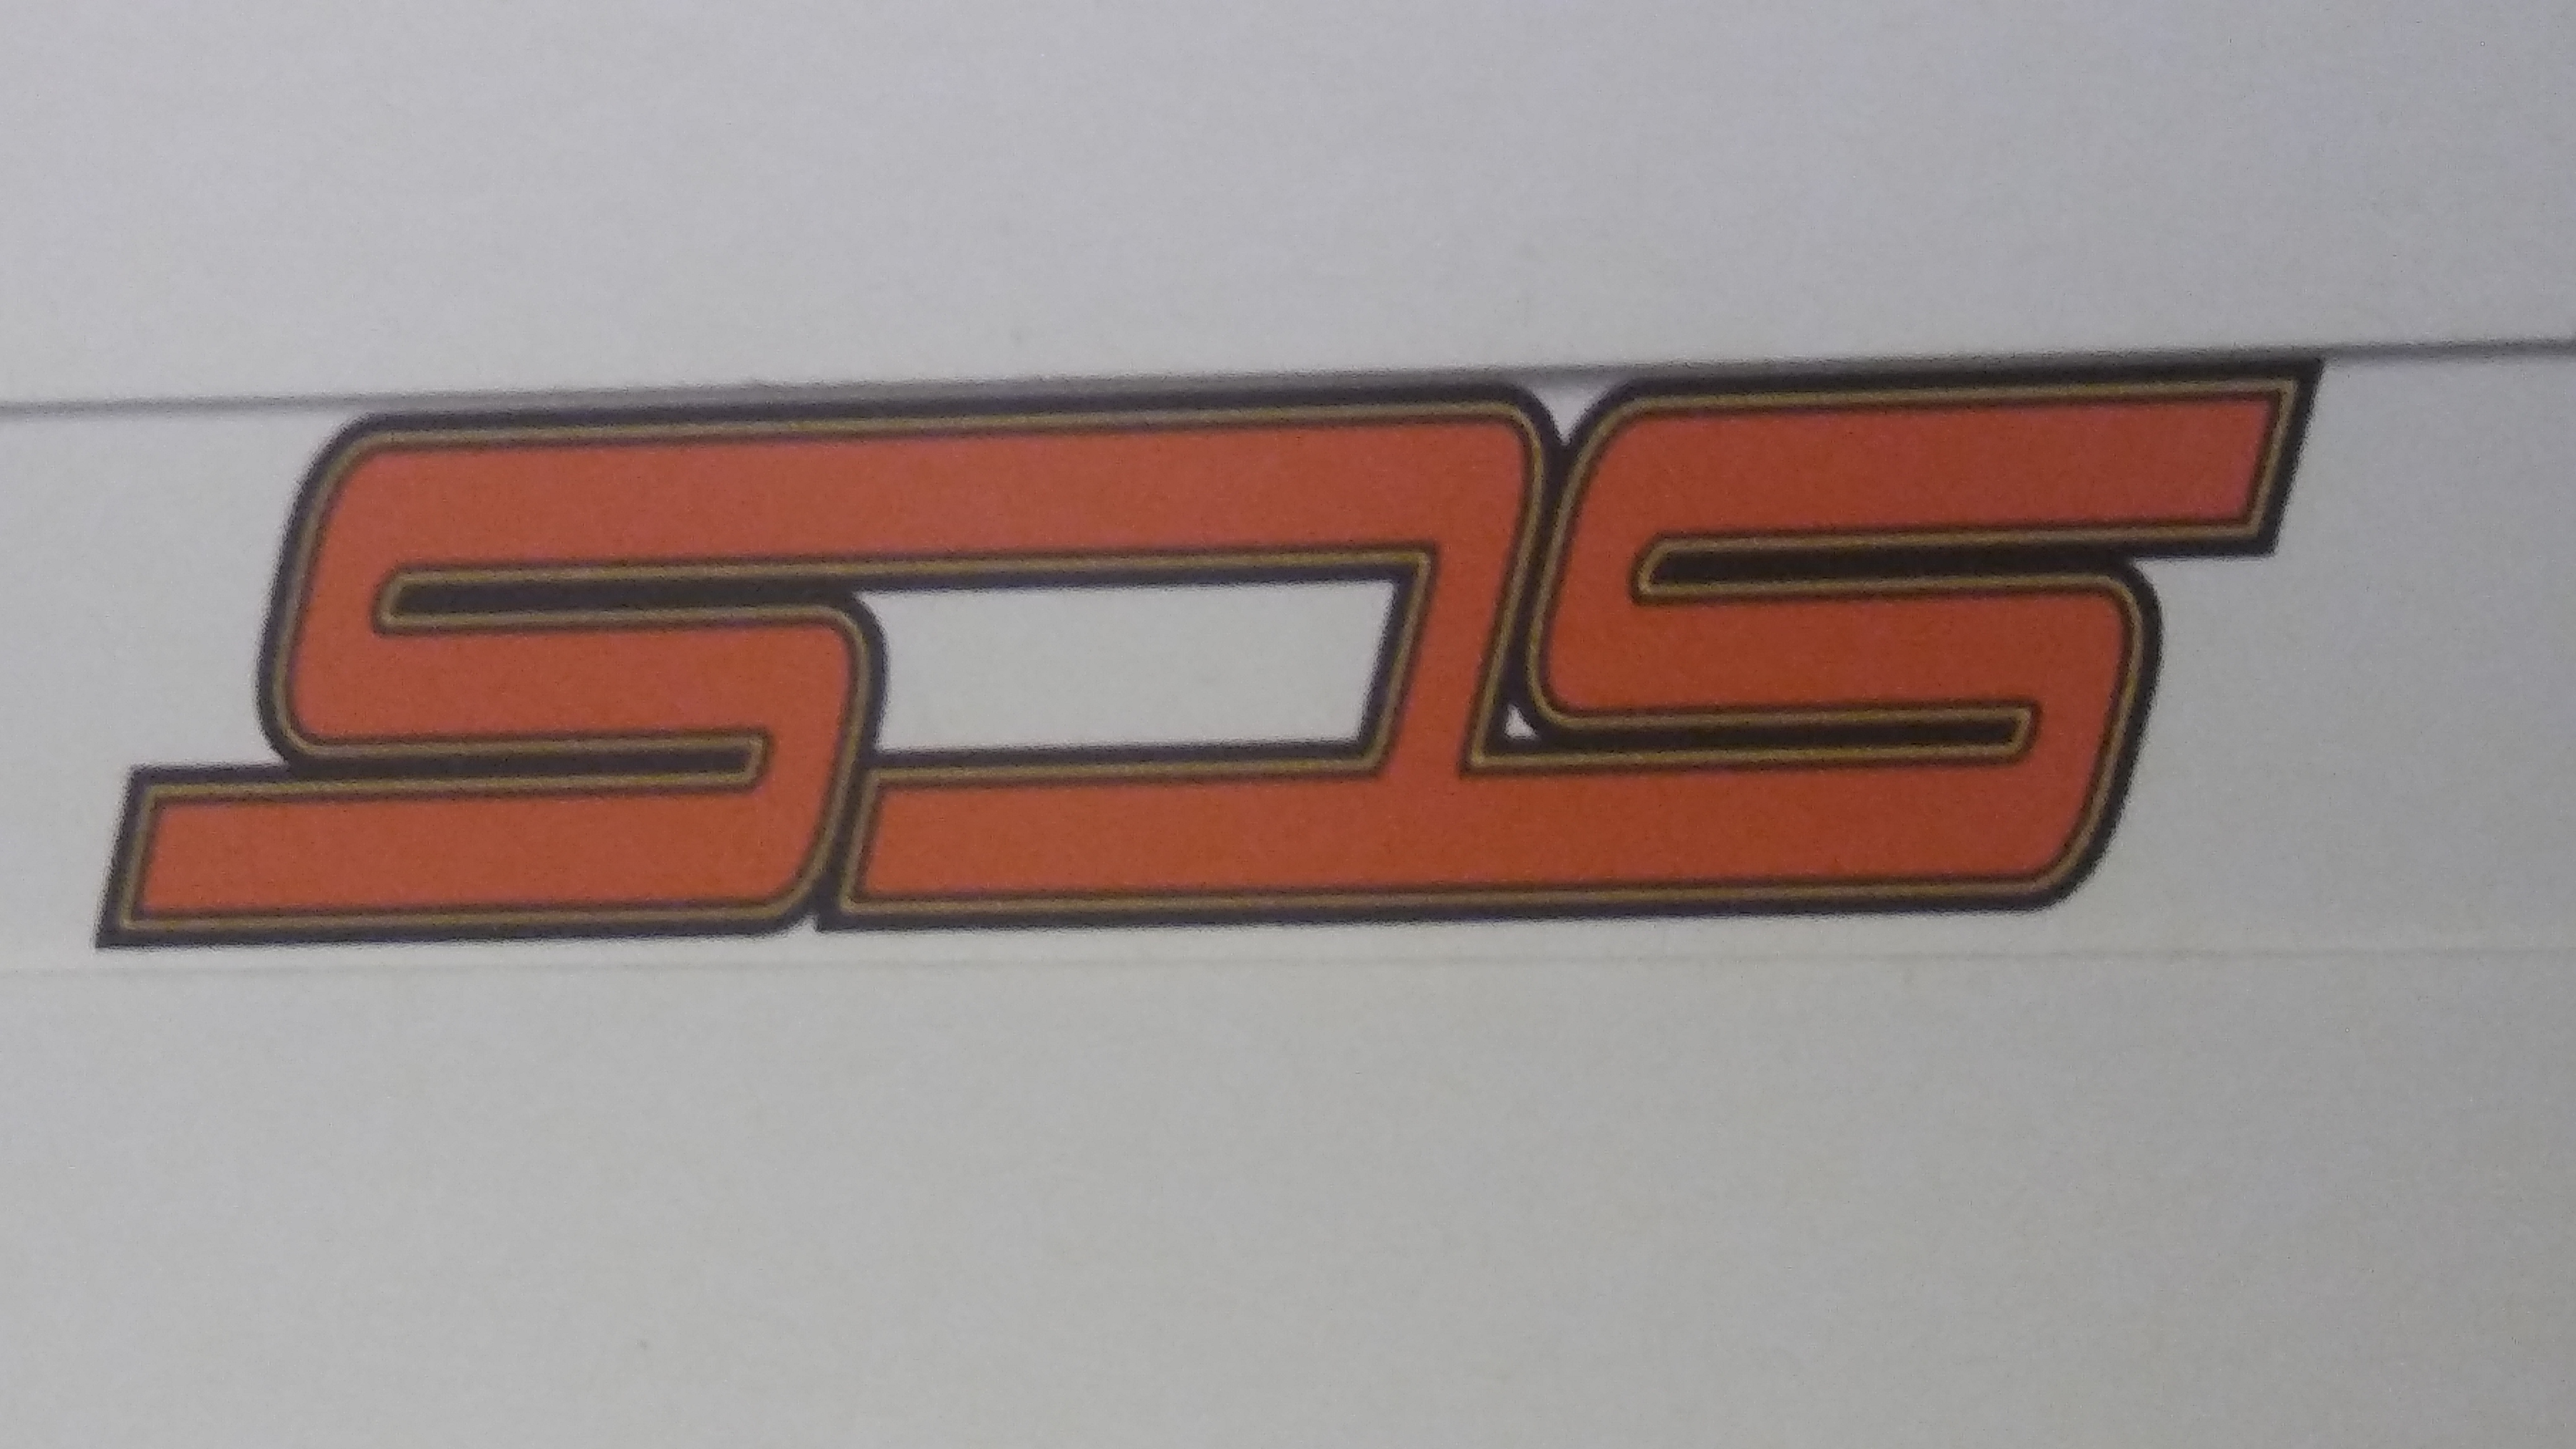 SCS - Unlicensed Contractor Logo